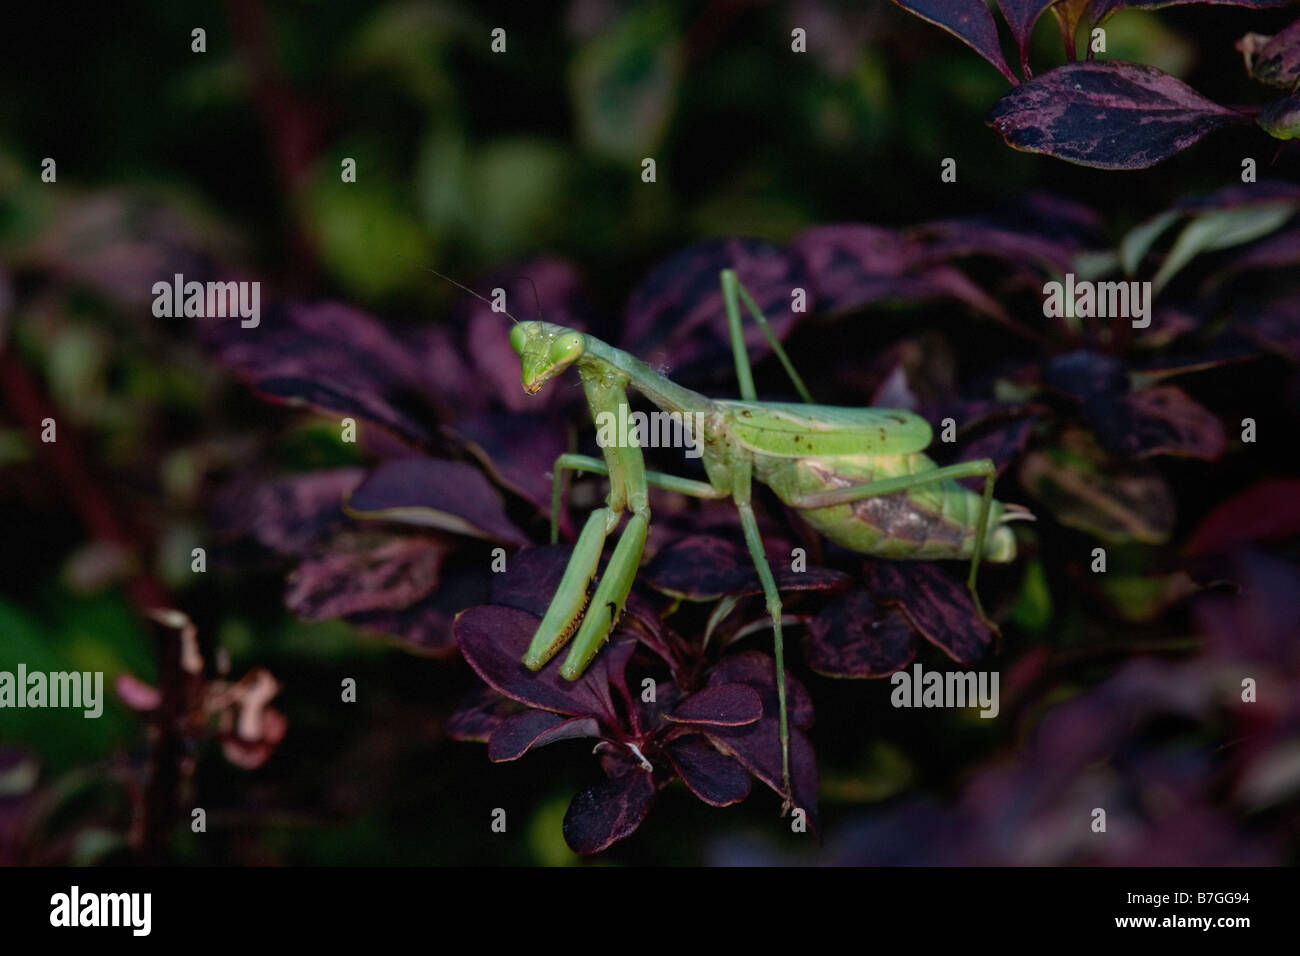 Green phase praying mantis in shrub leaves Stock Photo